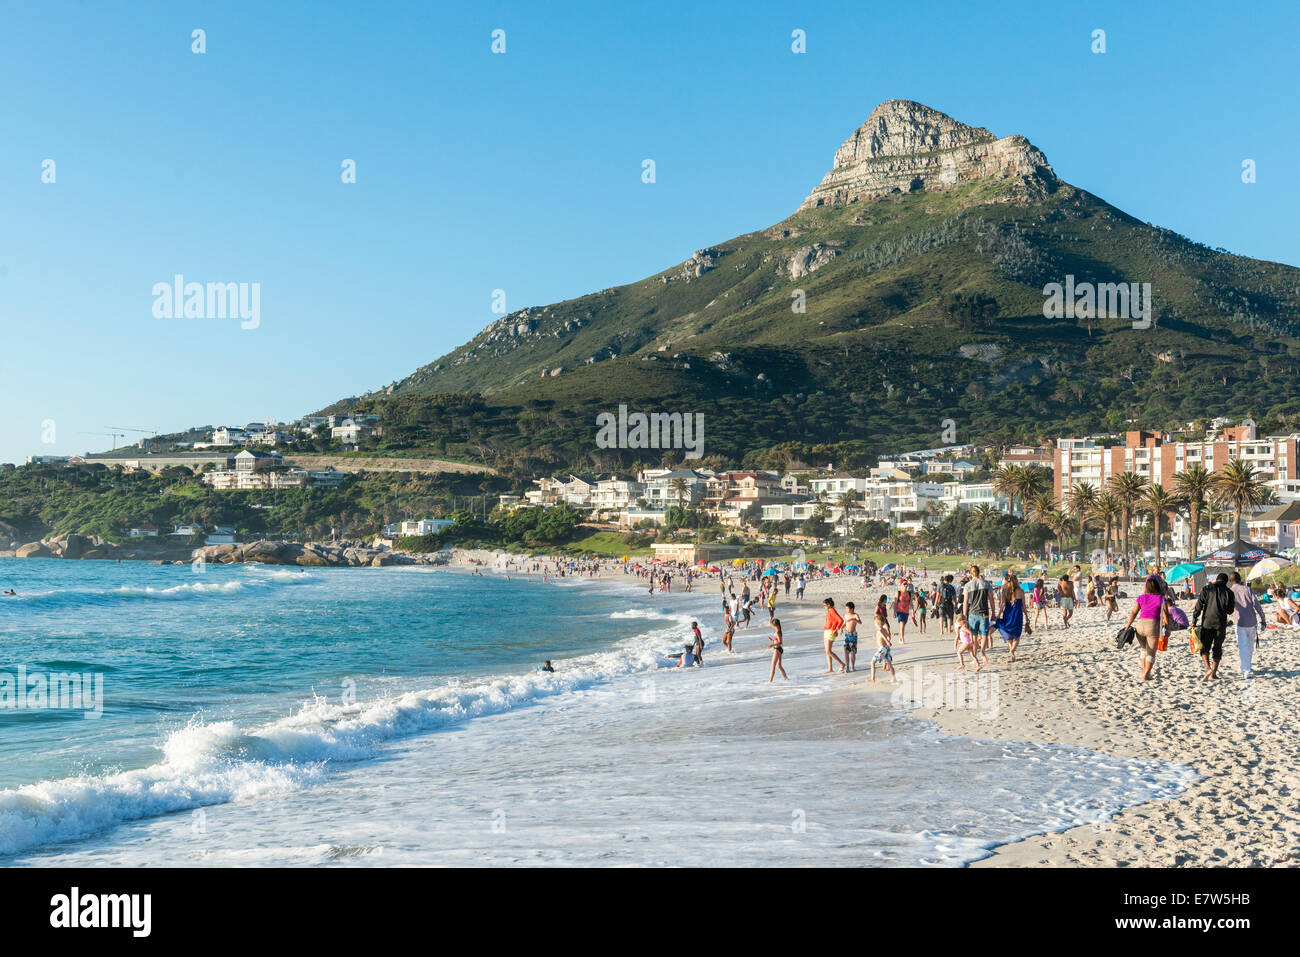 Les gens sur la plage de Camps Bay, de la tête de lion à l'arrière-plan, Le Cap, Afrique du Sud Banque D'Images